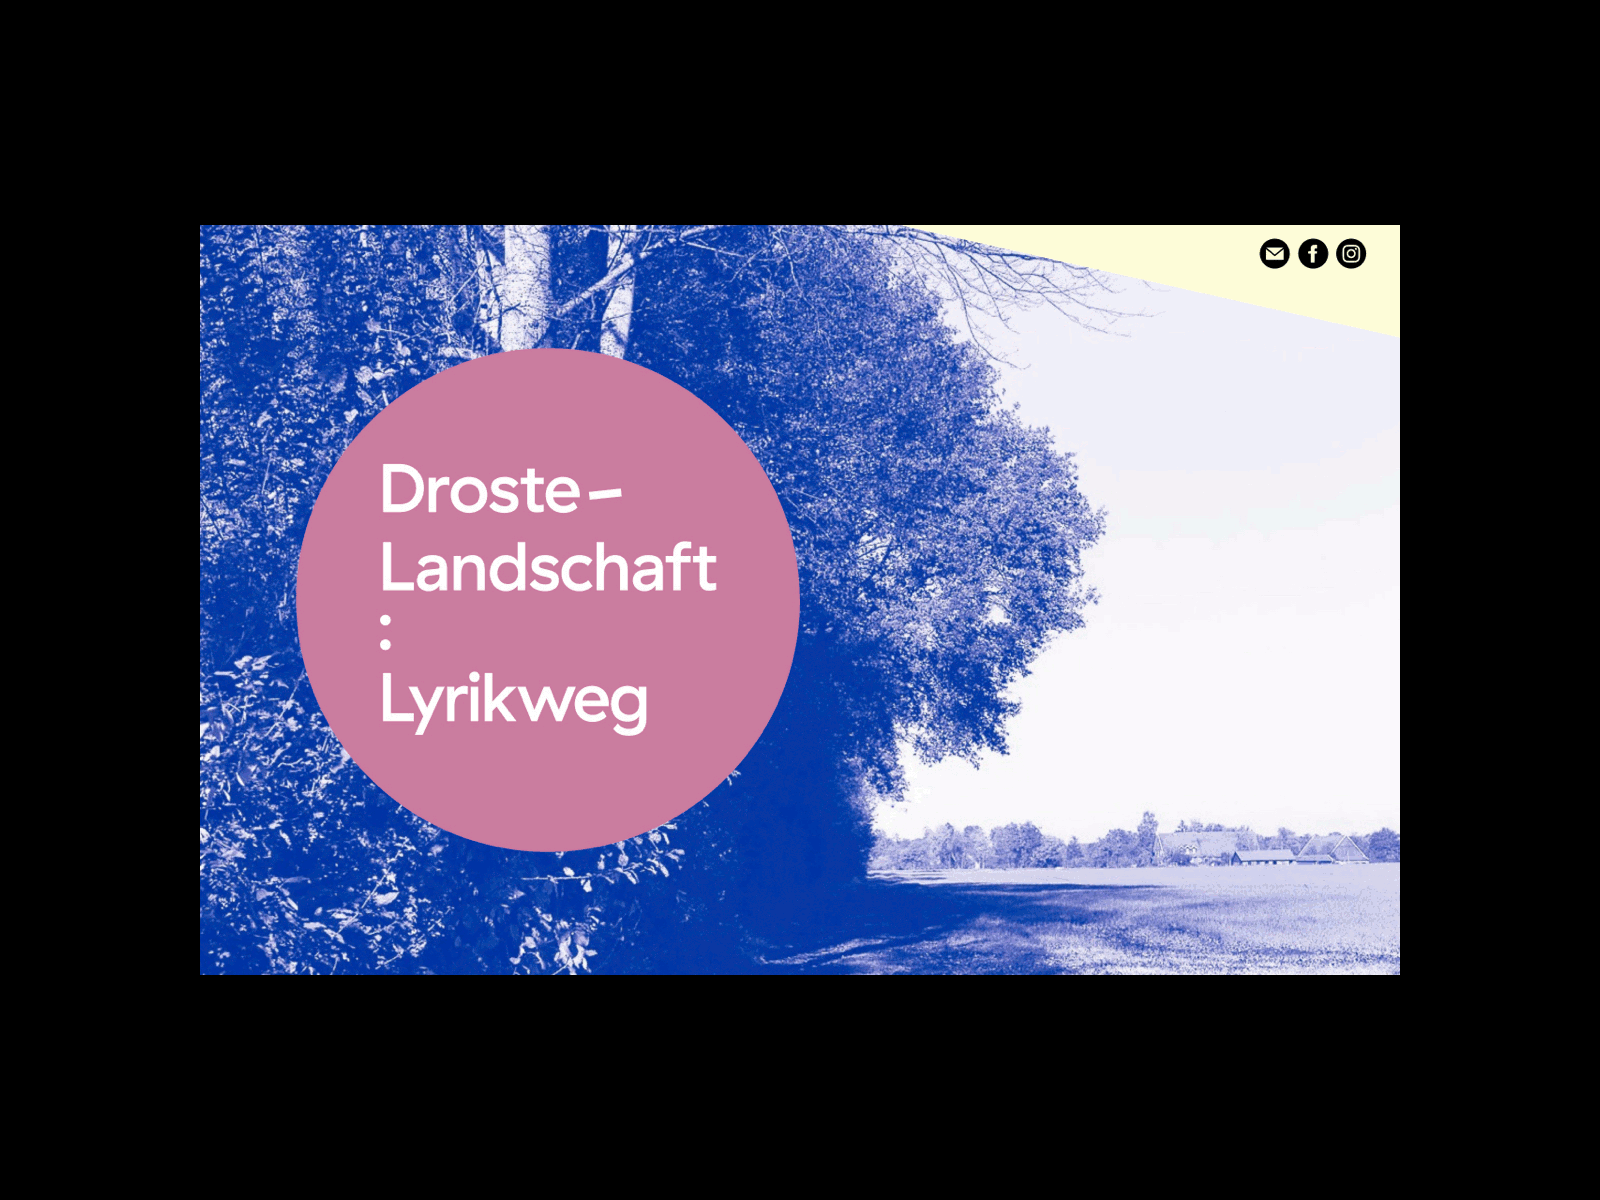 Dorste-Landschaft : Lyrikweg clean minimal ui webdesign website